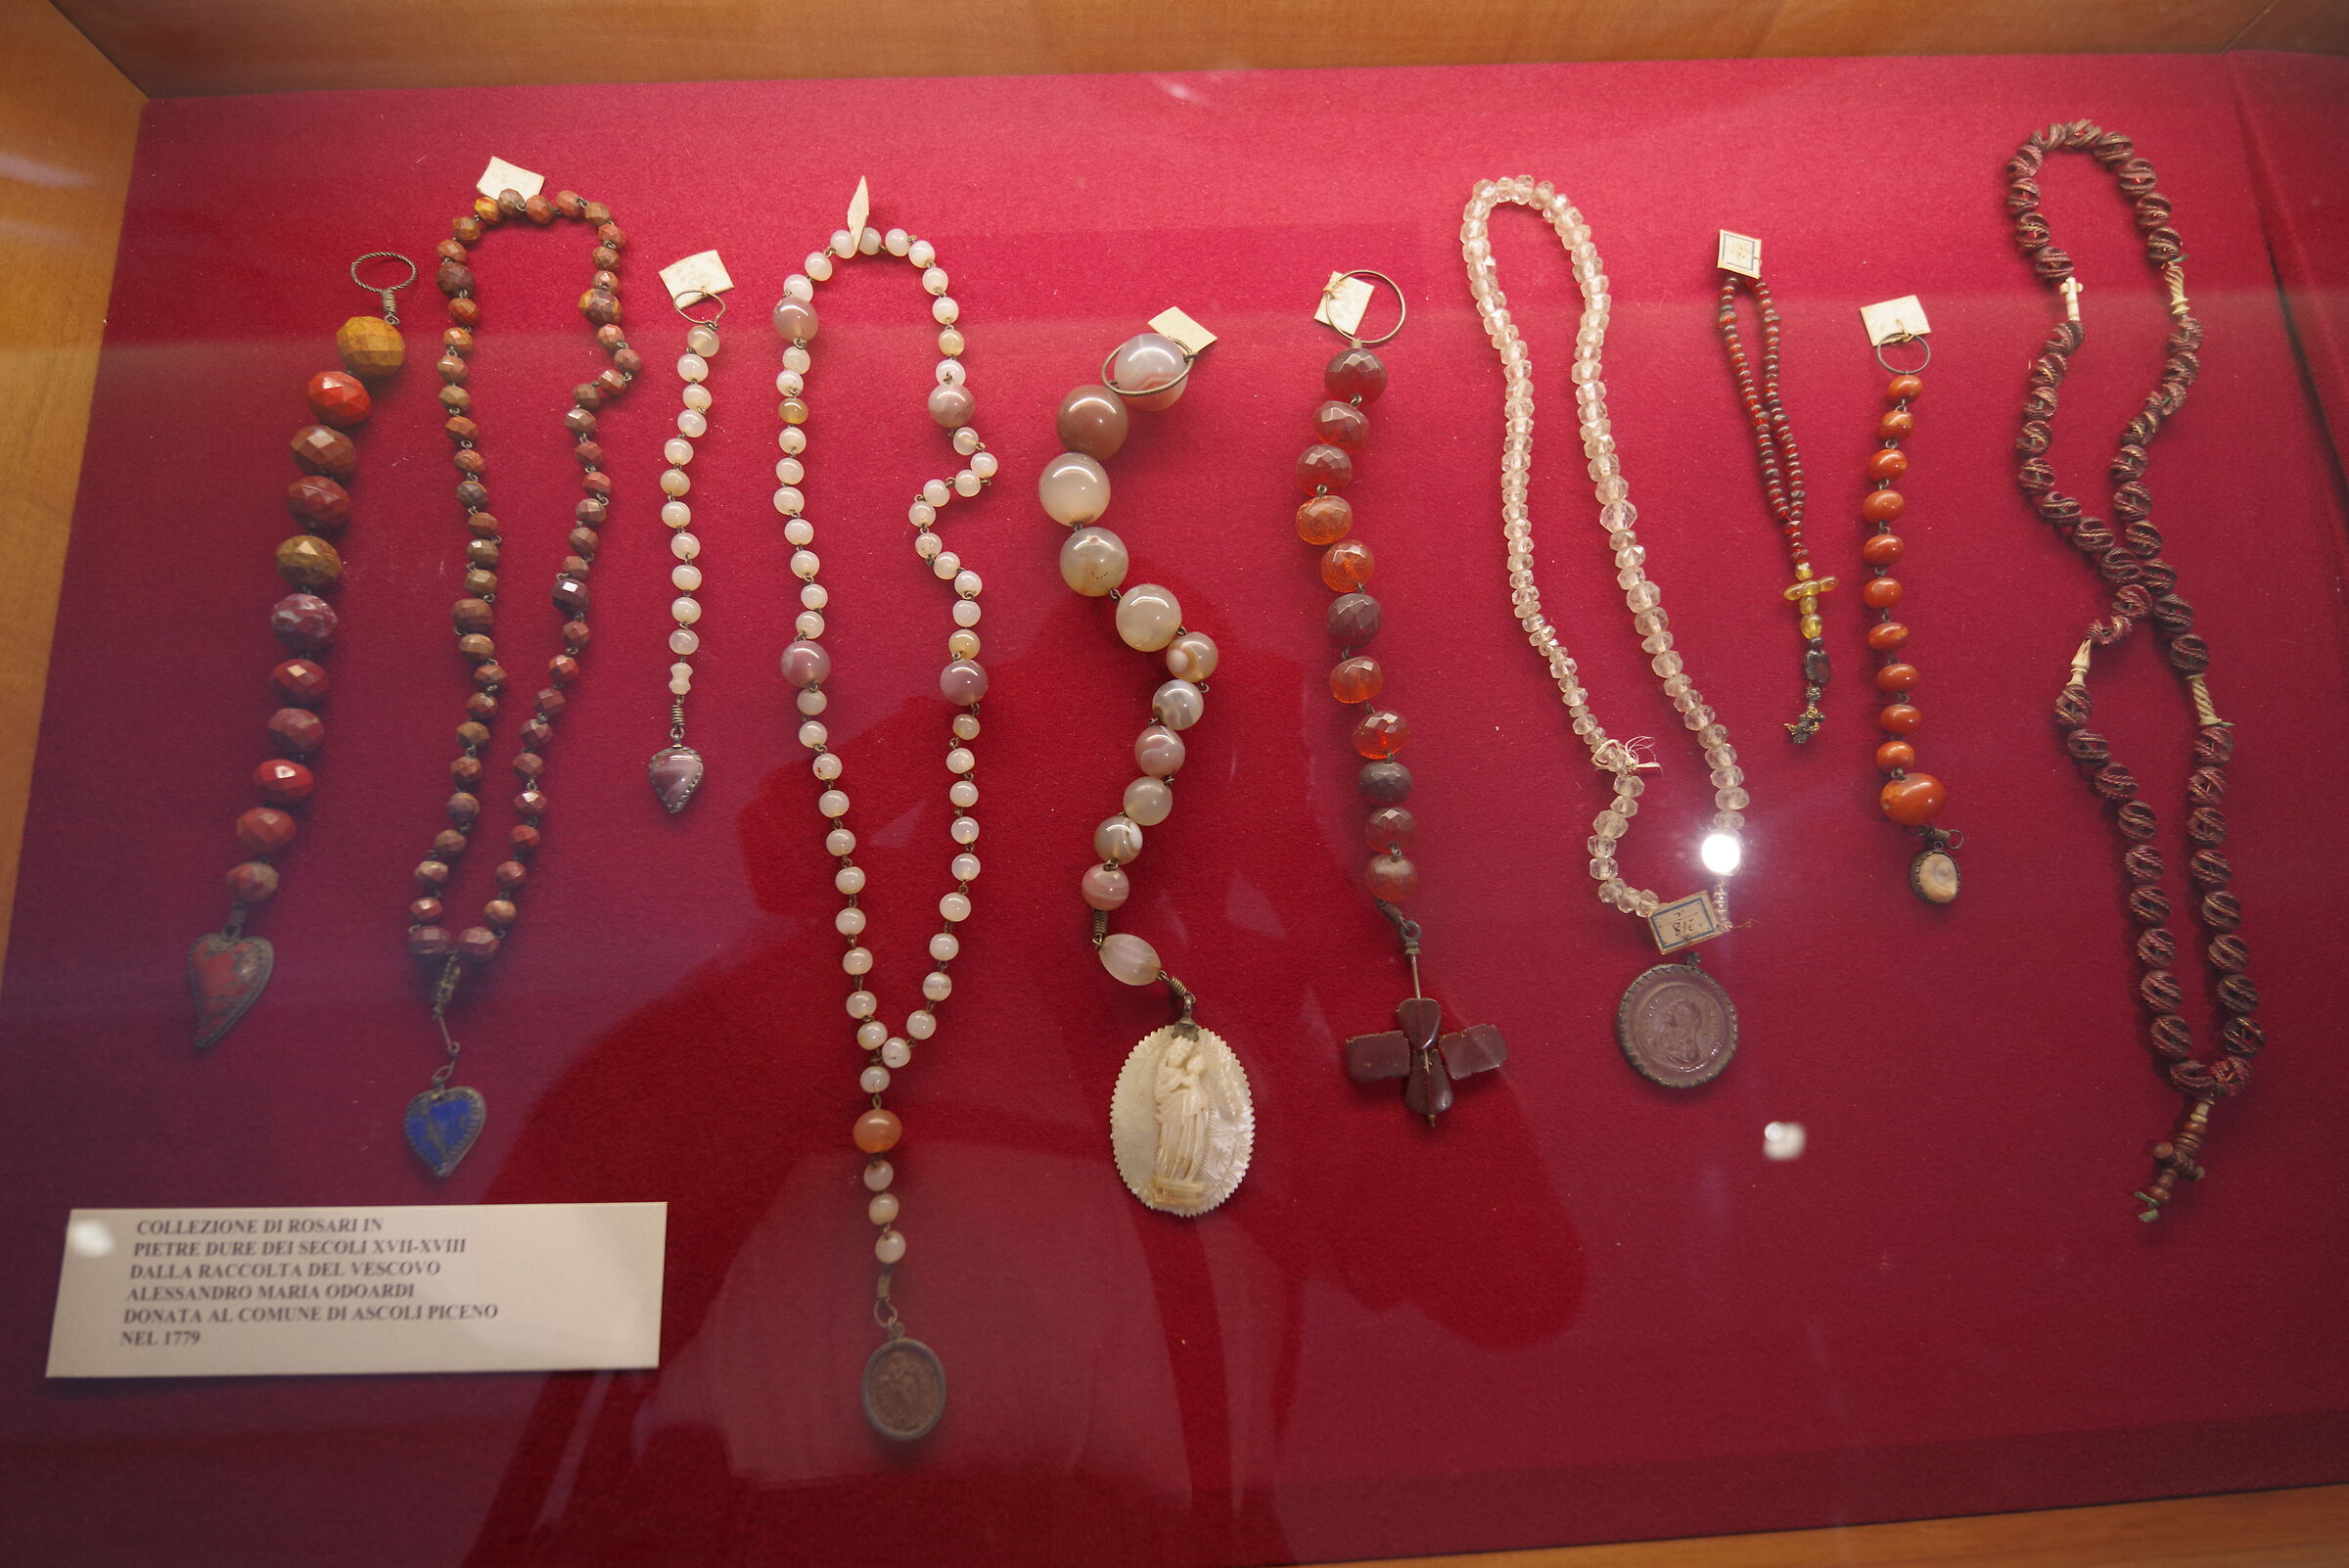 Rosaries in semi-precious stones (Ascoli Piceno museum)...